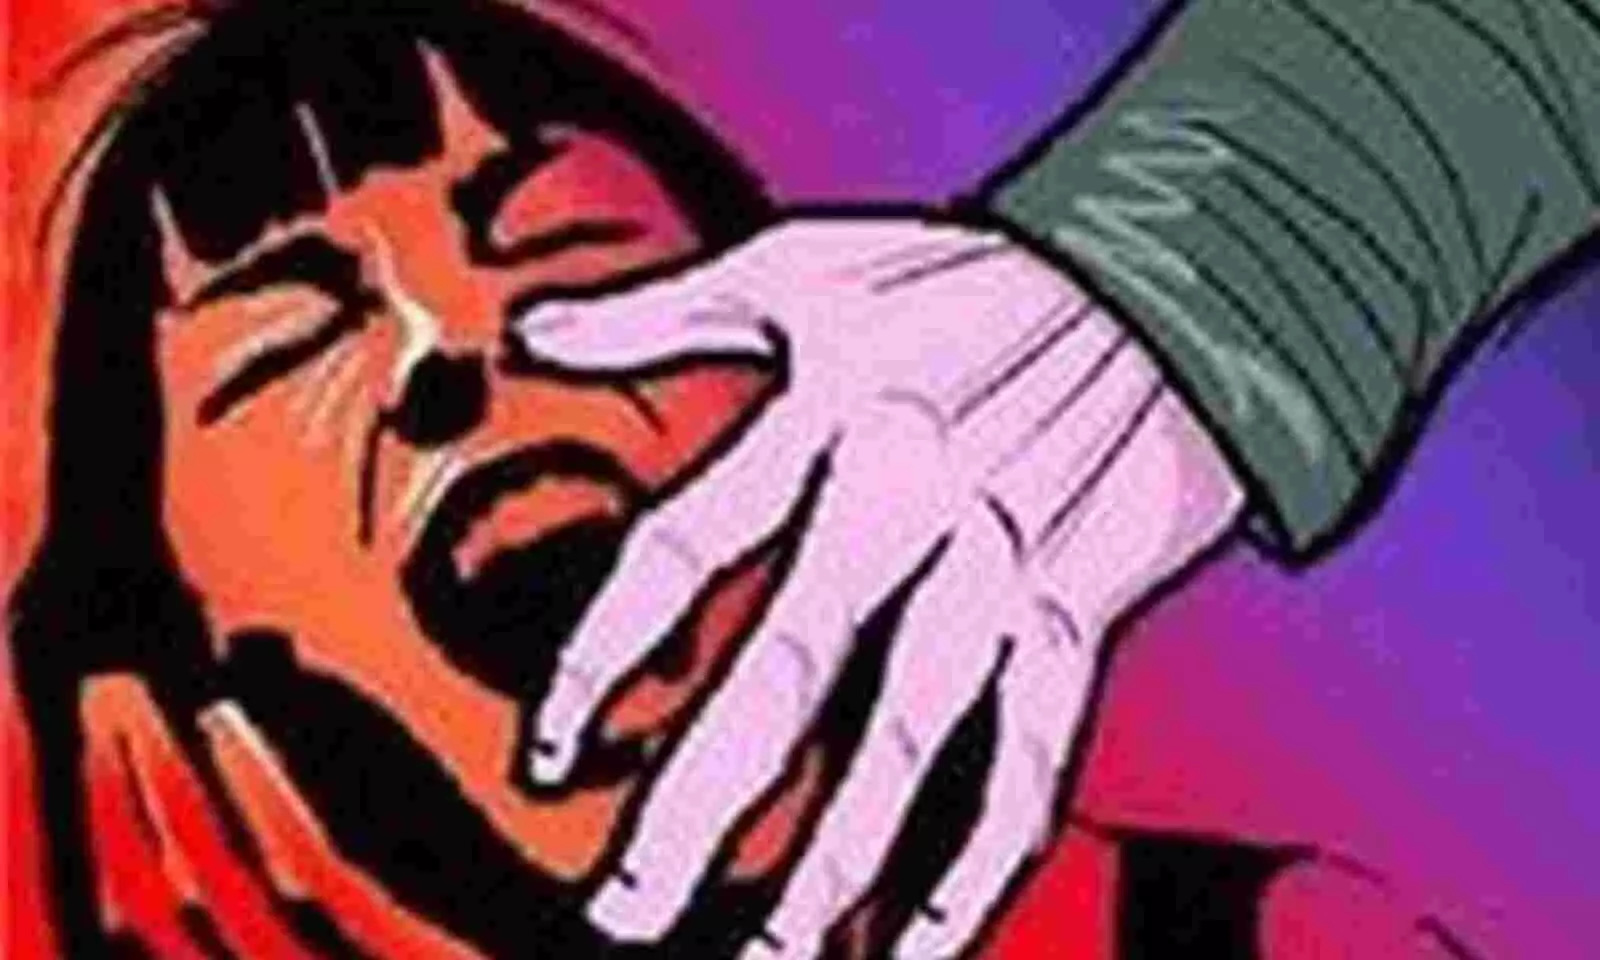 Home-alone 5-year-old raped in Kapurthala